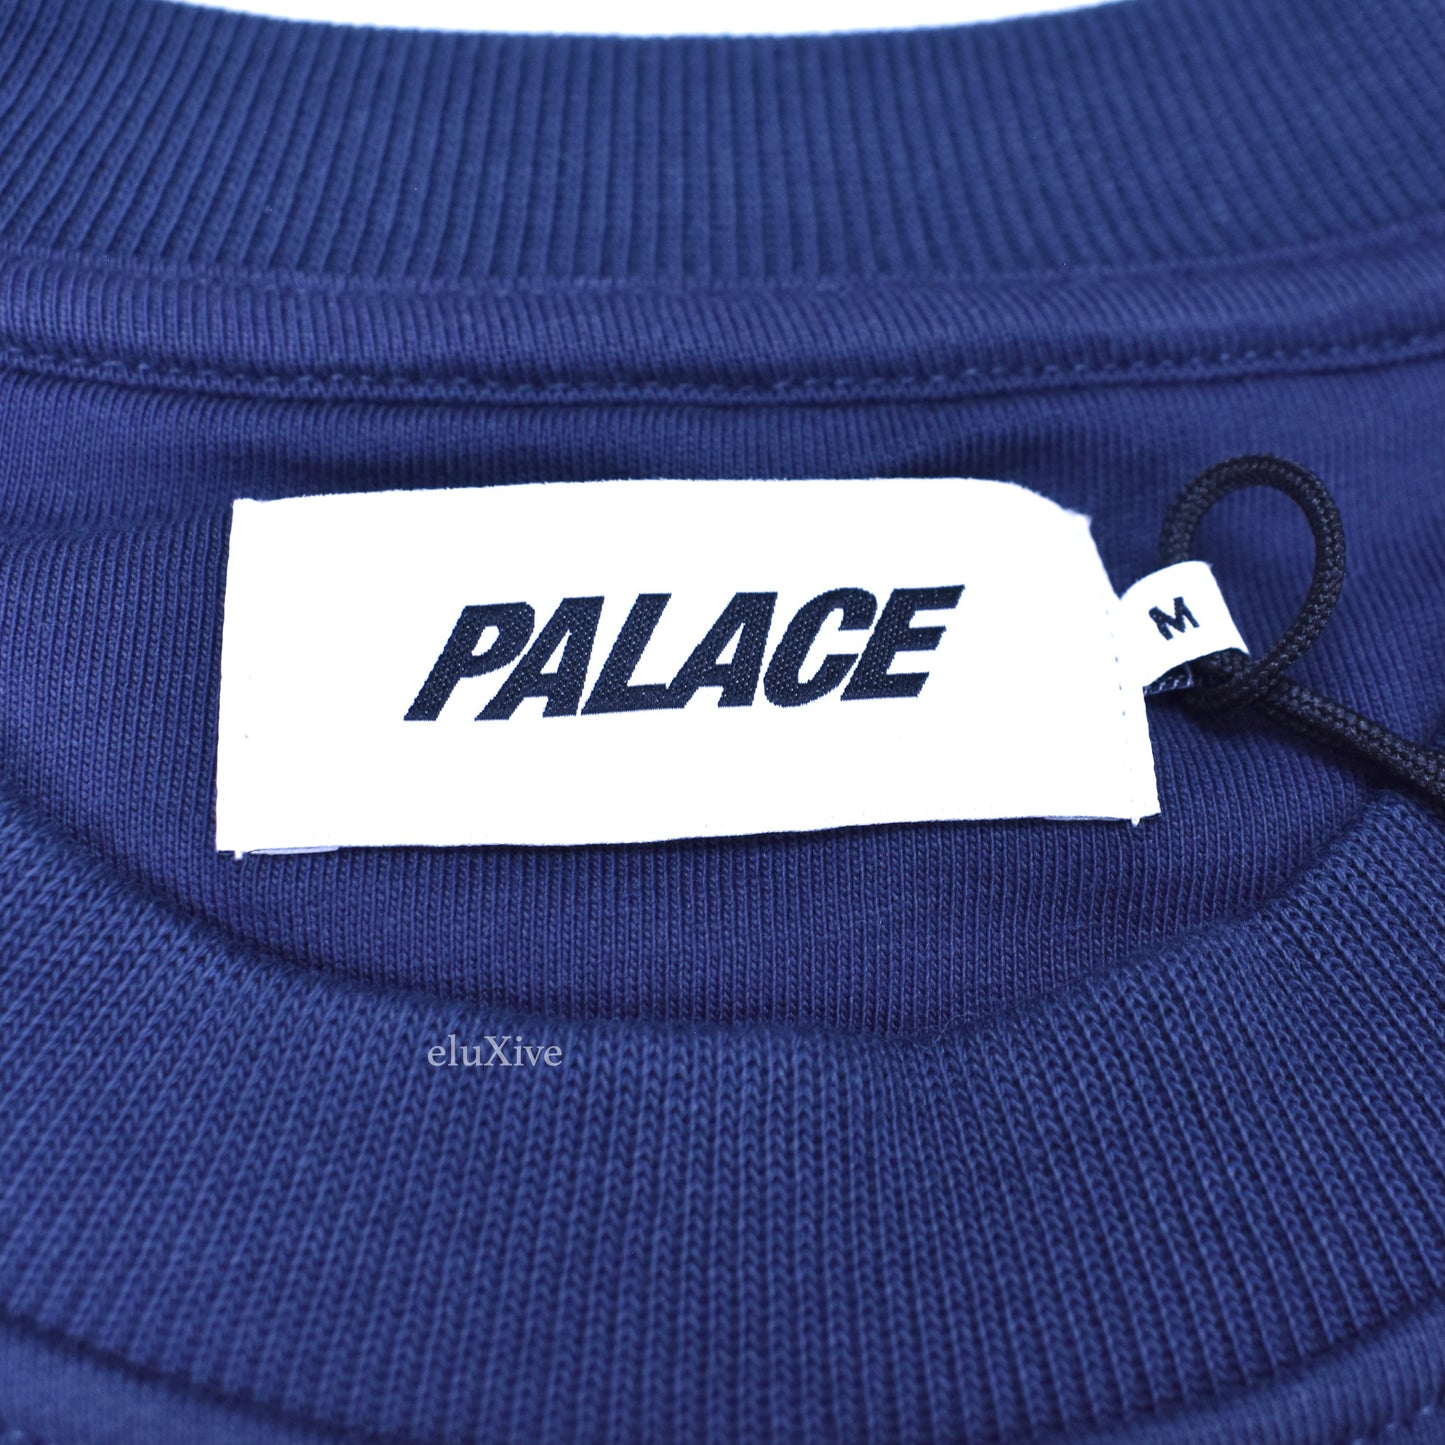 Palace - Navy Pal State College Logo Sweatshirt